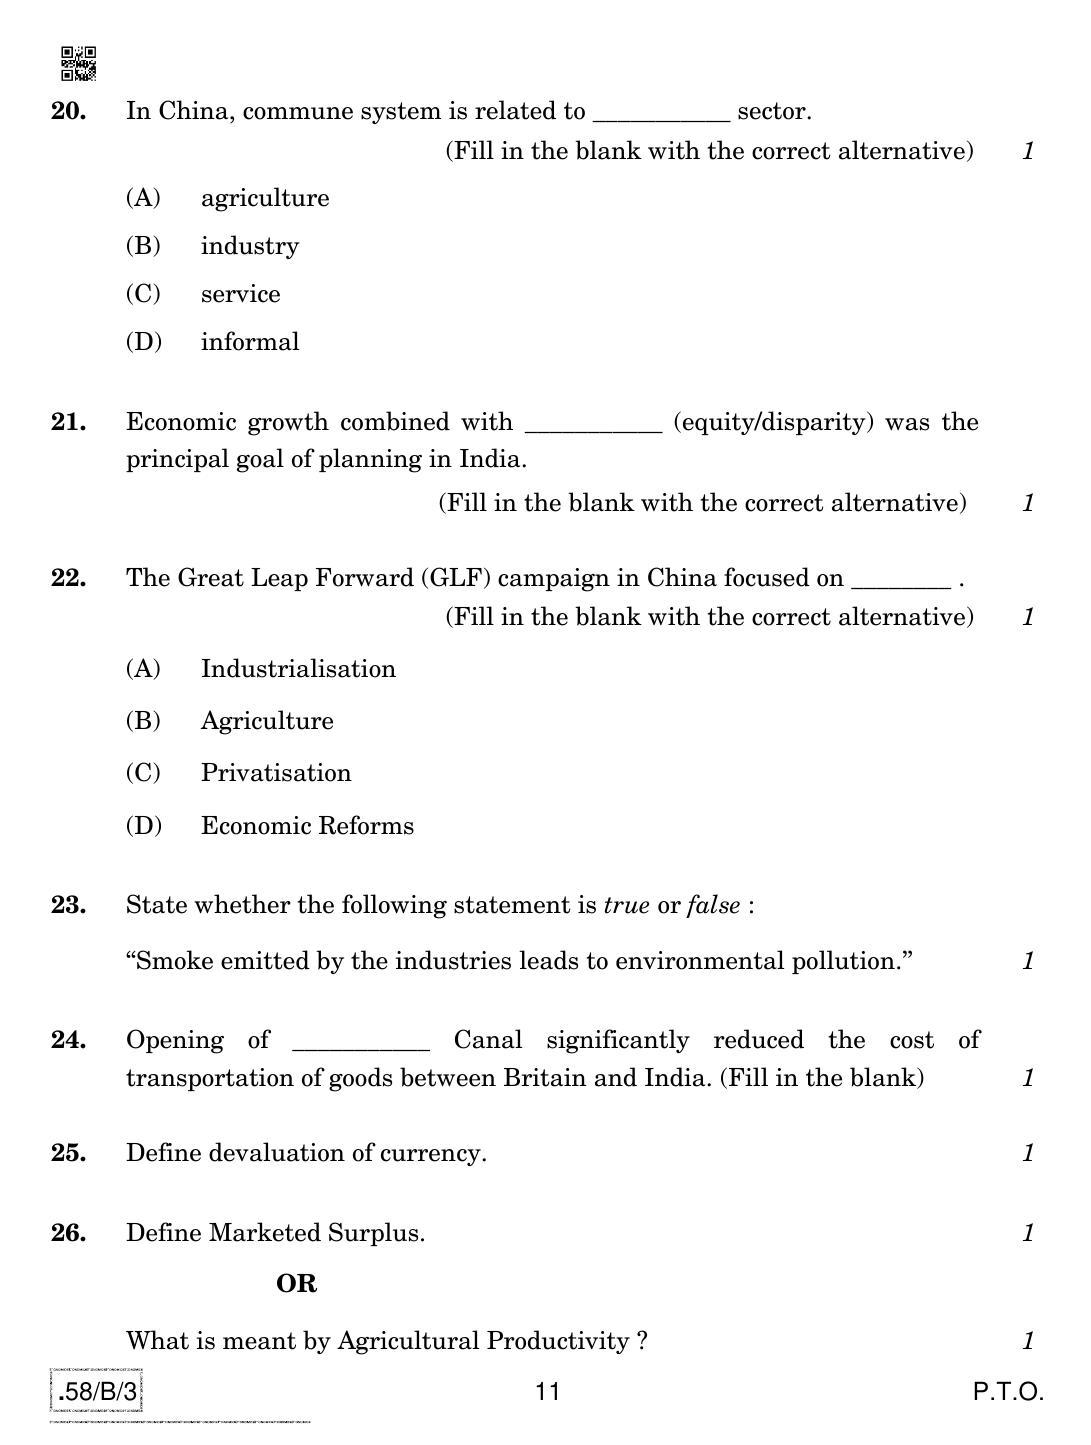 CBSE Class 12 58-C-3 - Economics 2020 Compartment Question Paper - Page 11